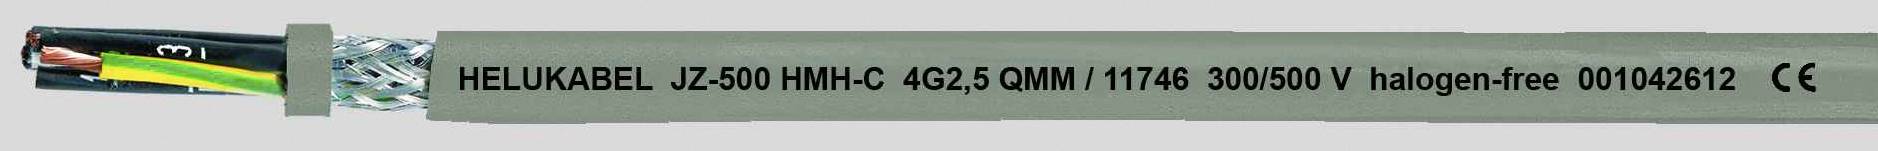 HELUKABEL JZ-500 HMH-C Steuerleitung 5 G 0.50 mm² Grau 11659-500 500 m